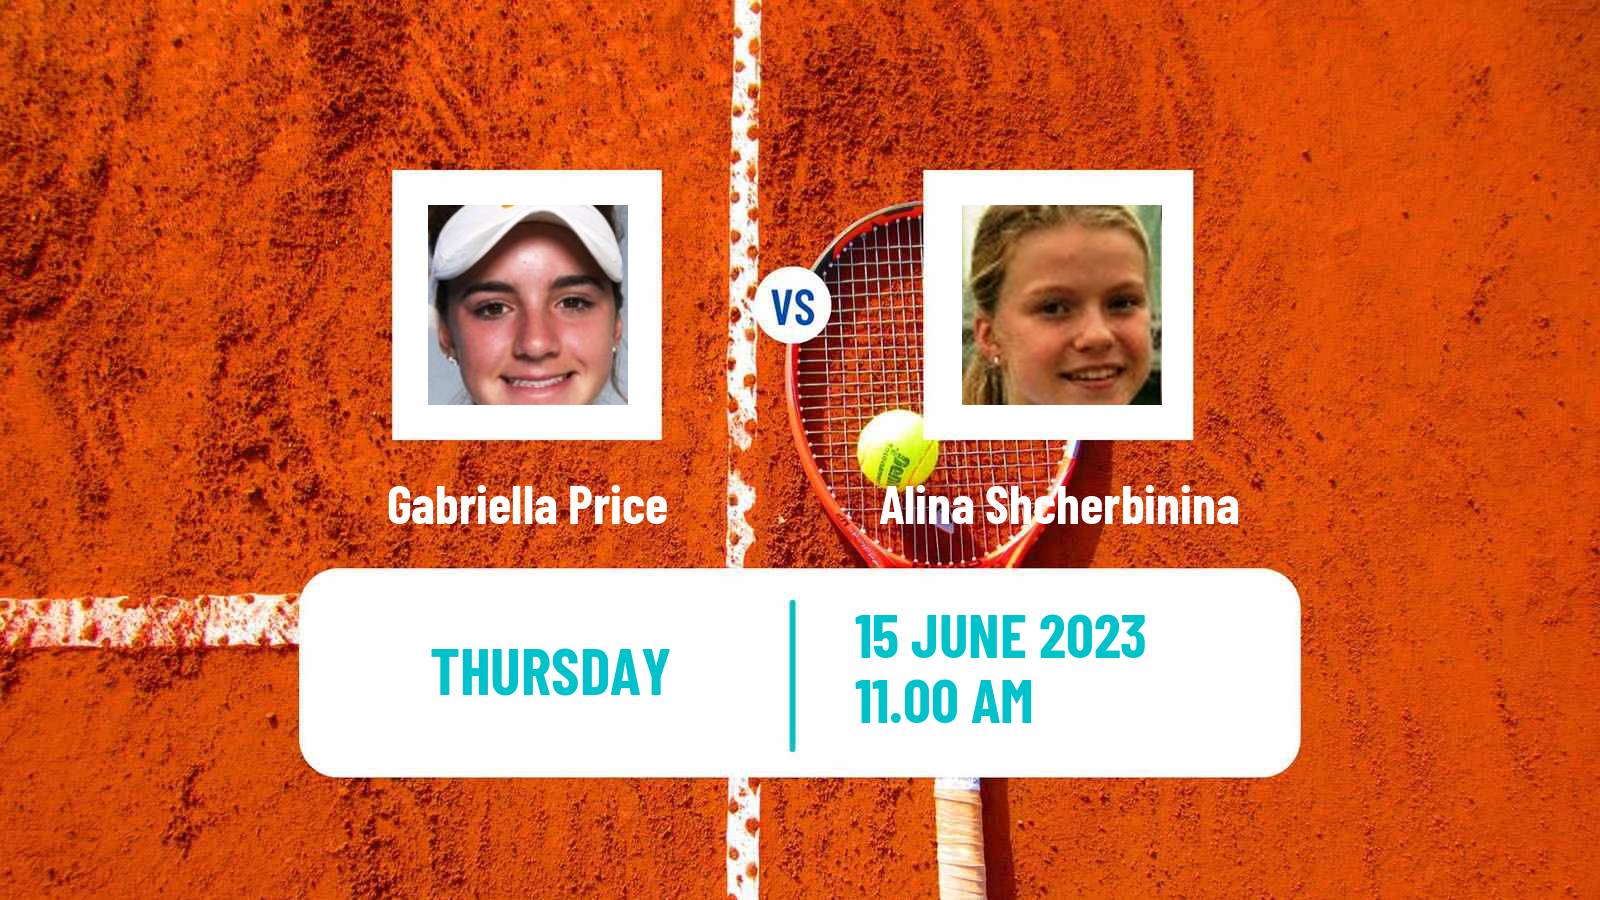 Tennis ITF W25 Colorado Springs Women Gabriella Price - Alina Shcherbinina